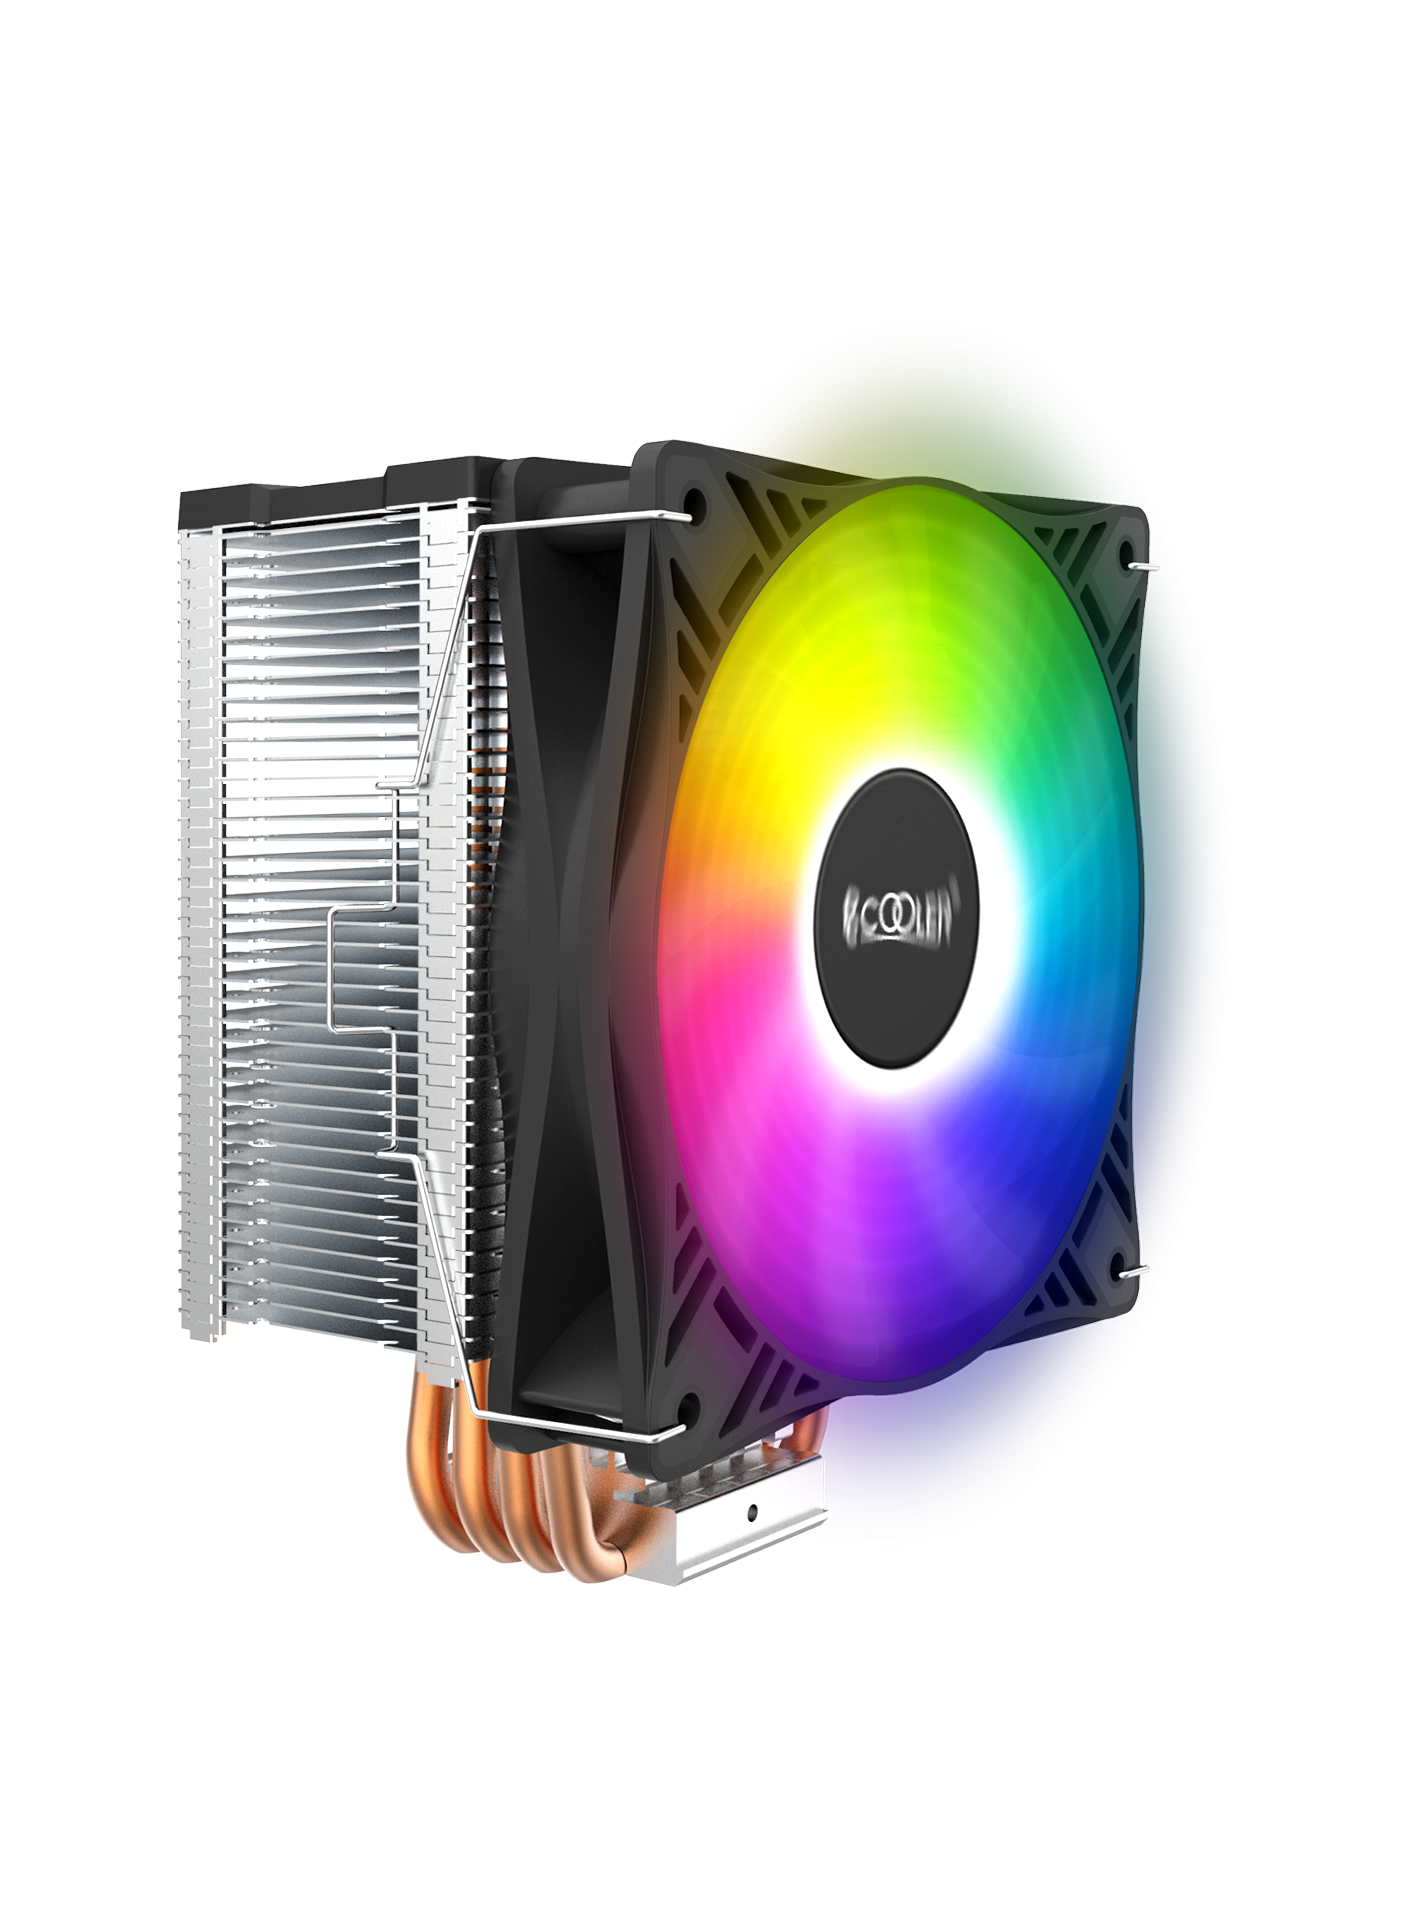 GI-X4S CPU Kühler leuchtet in RGB - Bild 1